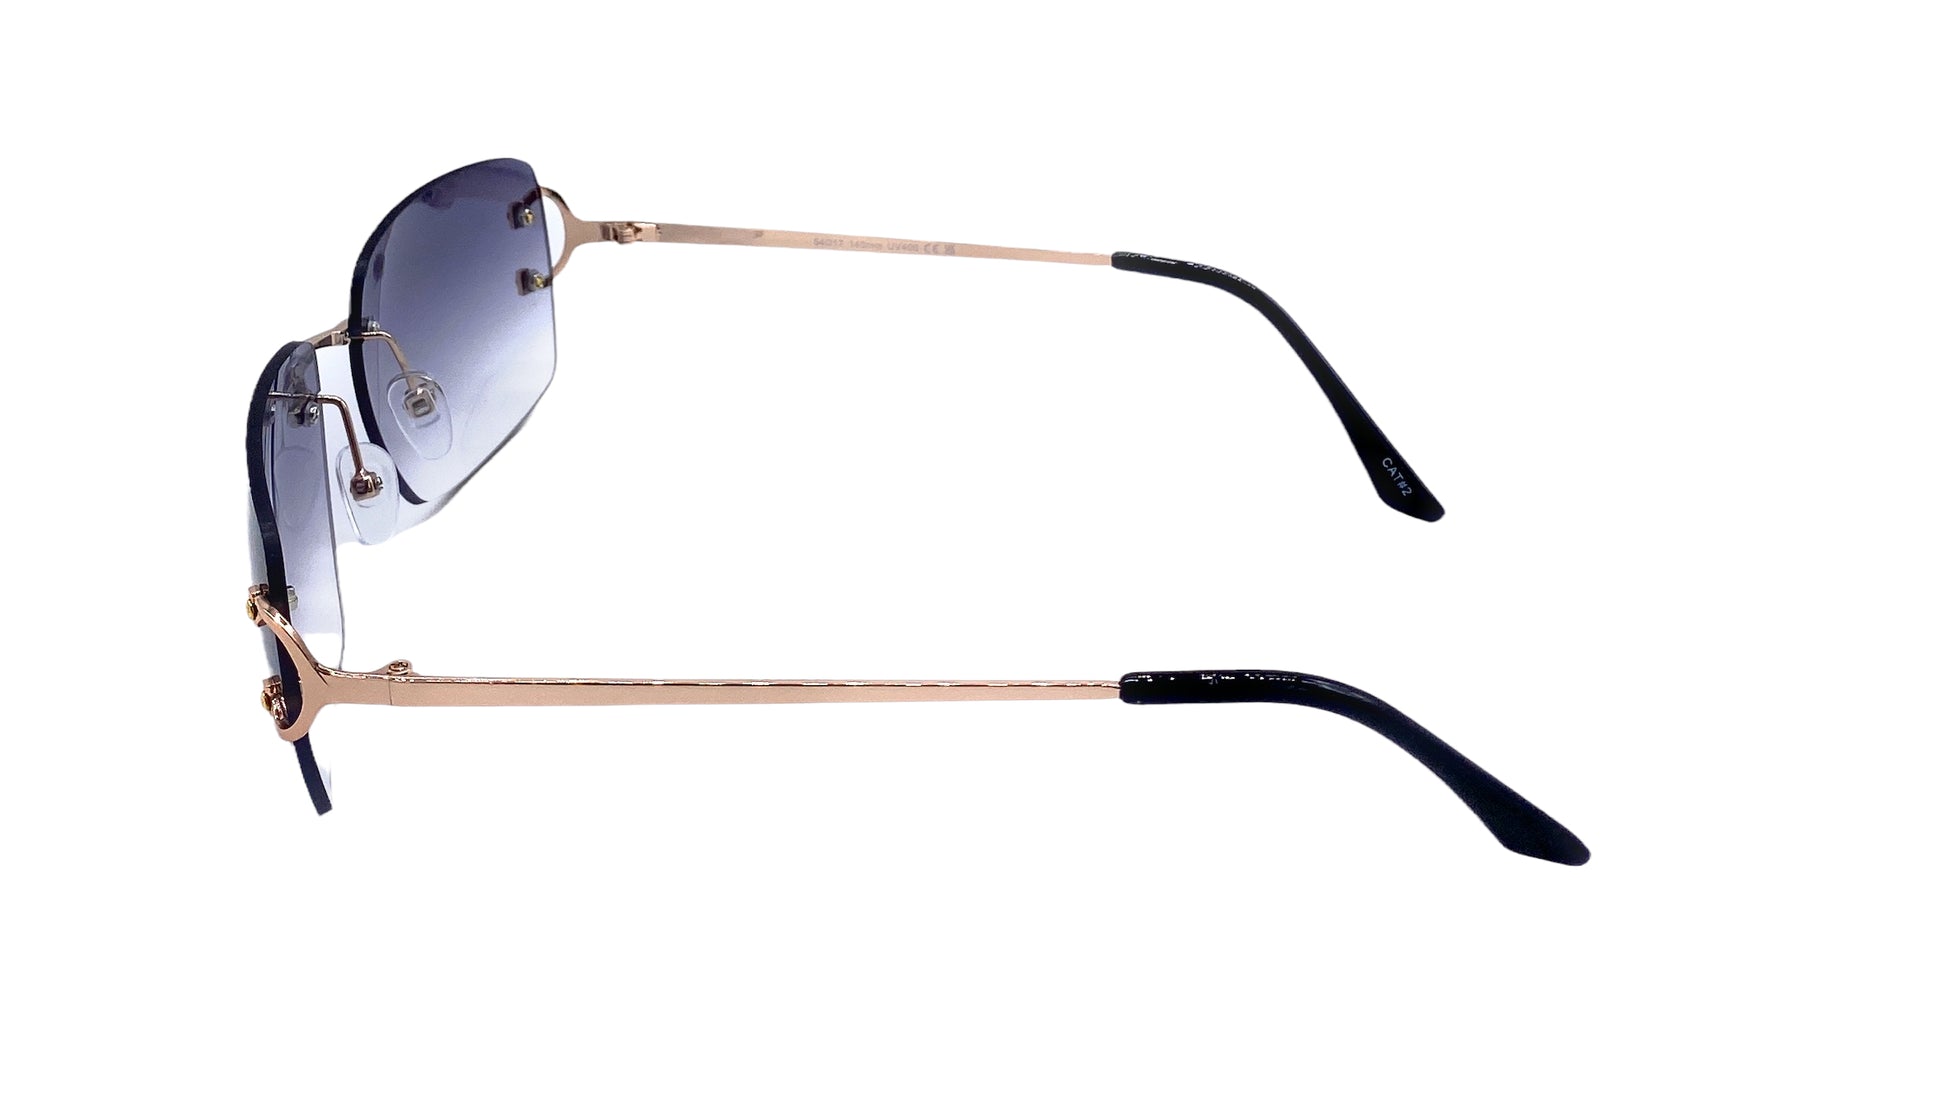 Empire Cove Rimless Sunglasses Gradient Square Retro Frameless UV Protection